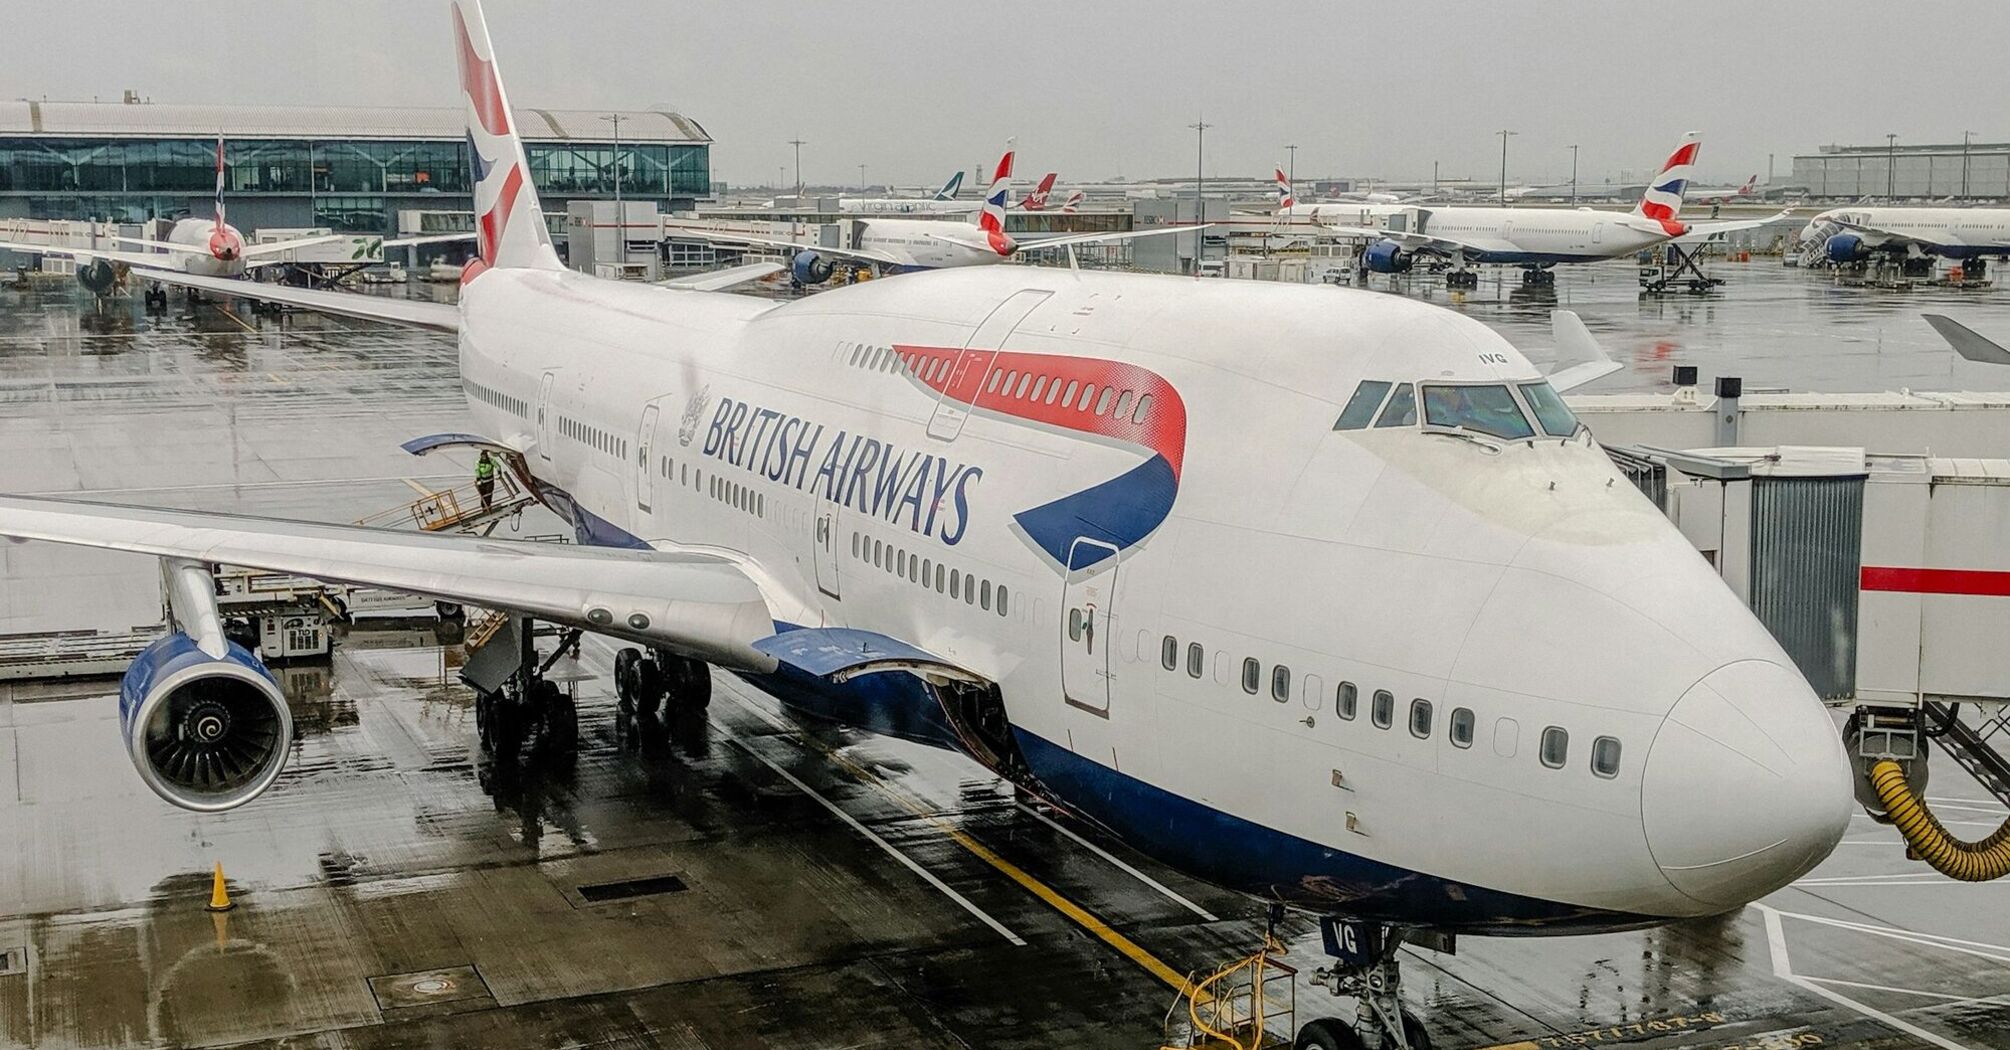 British Airways plane at Heathrow airport